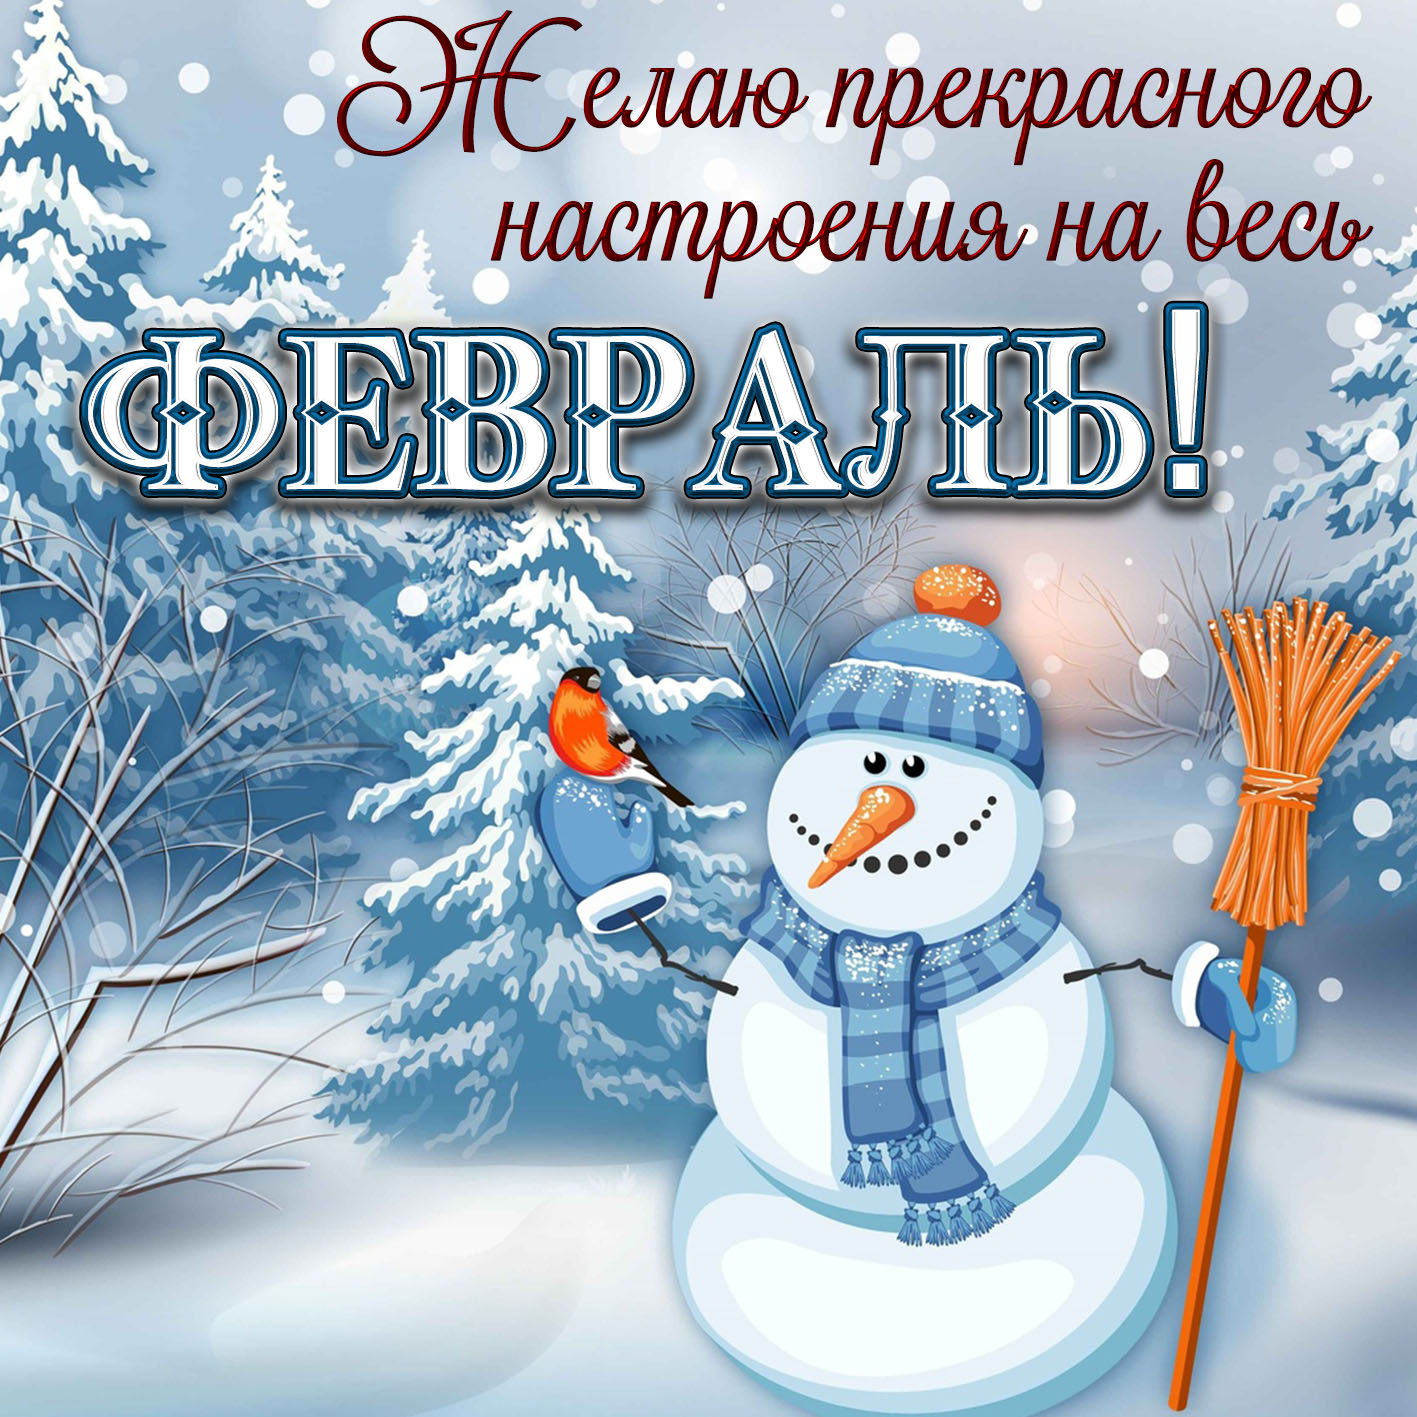 Самого лучшего дня зимние. Зимние пожелания. Доброго зимнего дня. Хорошего зимнего настроения. Пожелания хорошего зимнего дня.